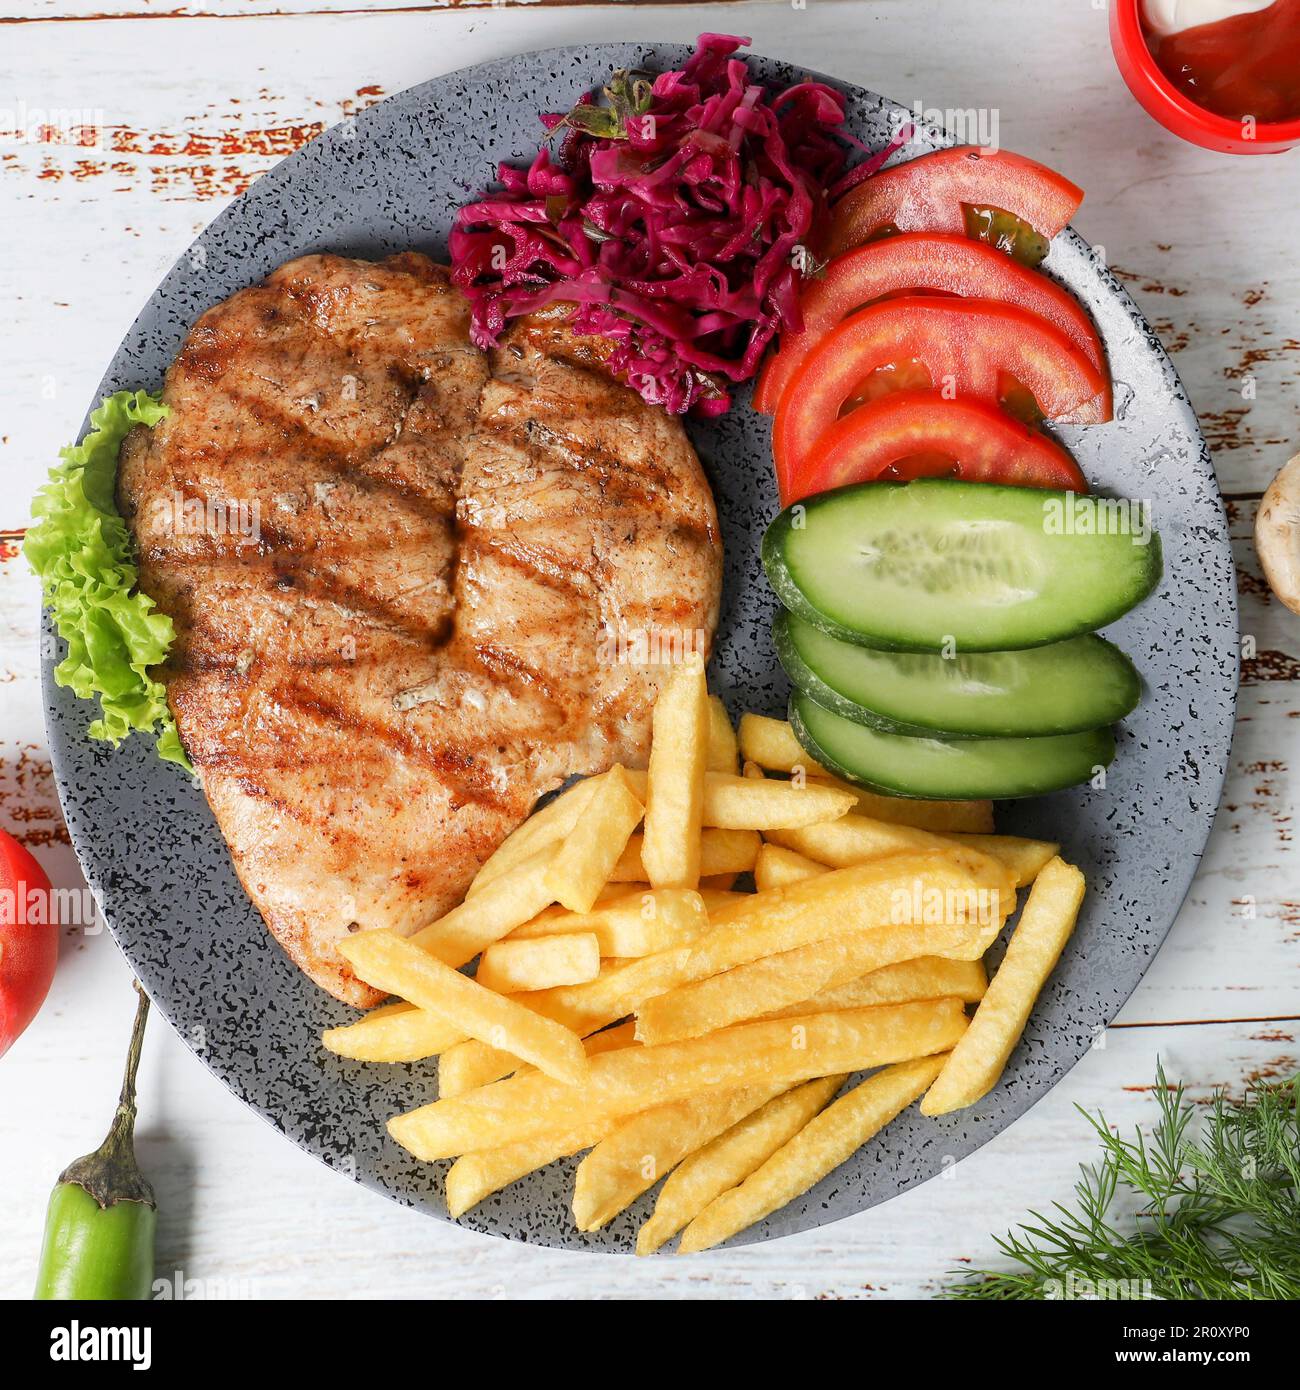 Un délicieux repas avec un steak juteux, des frites croustillantes et une variété de légumes colorés disposés sur une assiette placée sur une table en bois Banque D'Images